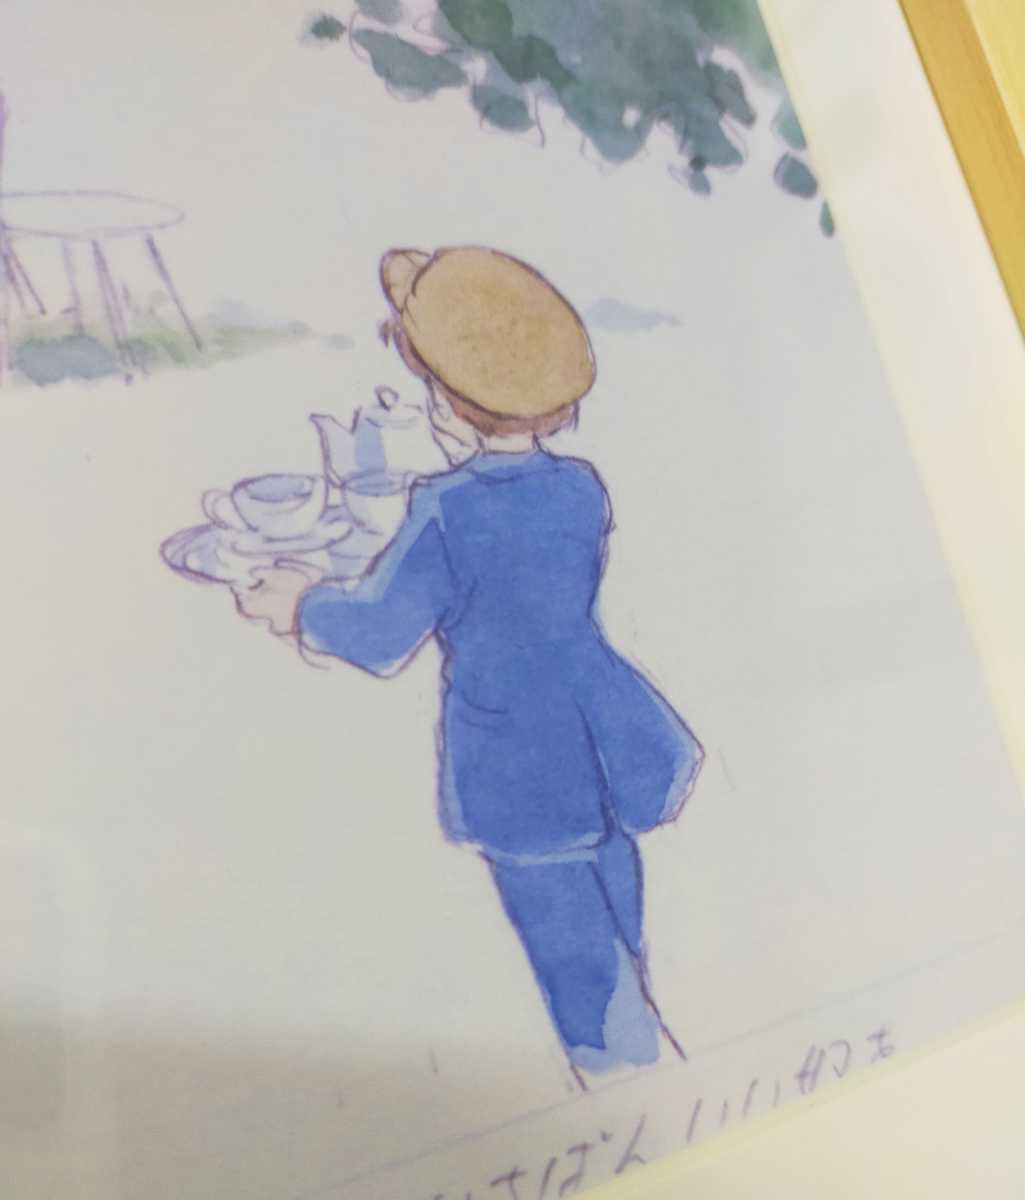 Hace 39 años [No está a la venta] Studio Ghibli Hayao Miyazaki A mi hermana Fotografía fija Materiales de ajuste Artículo enmarcado 1982 Animage Postal Foto original GHIBLI, historietas, productos de anime, otros